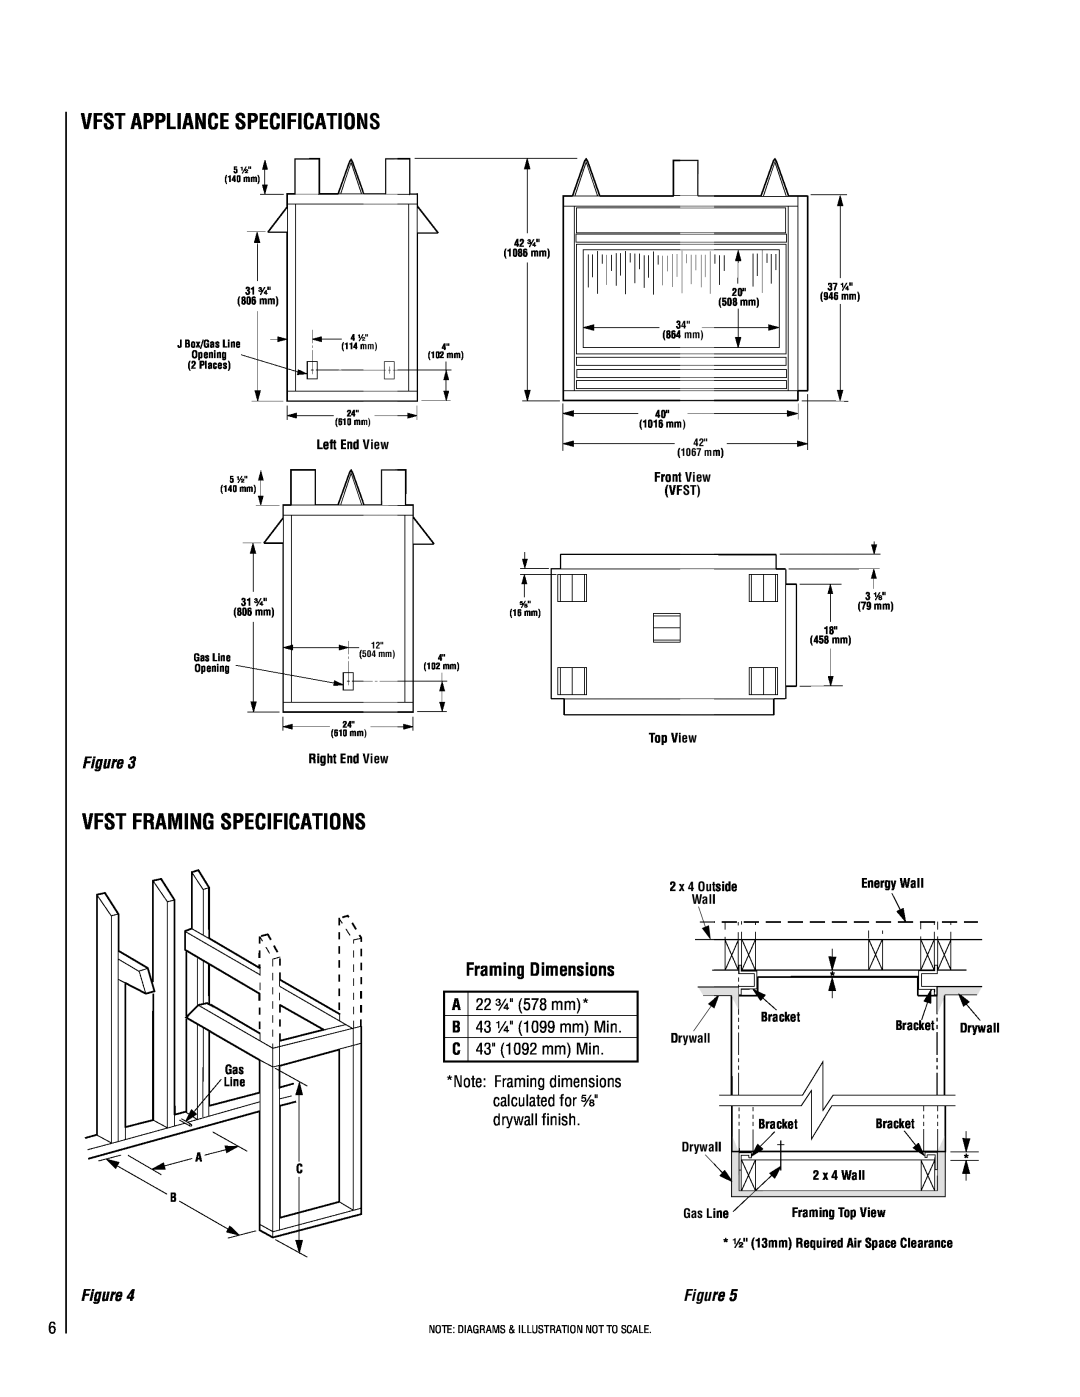 Superior VFST-CMN-2 Vfst Appliance Specifications, Vfst Framing Specifications, Framing Dimensions, A 22 ³⁄₄ 578 mm 